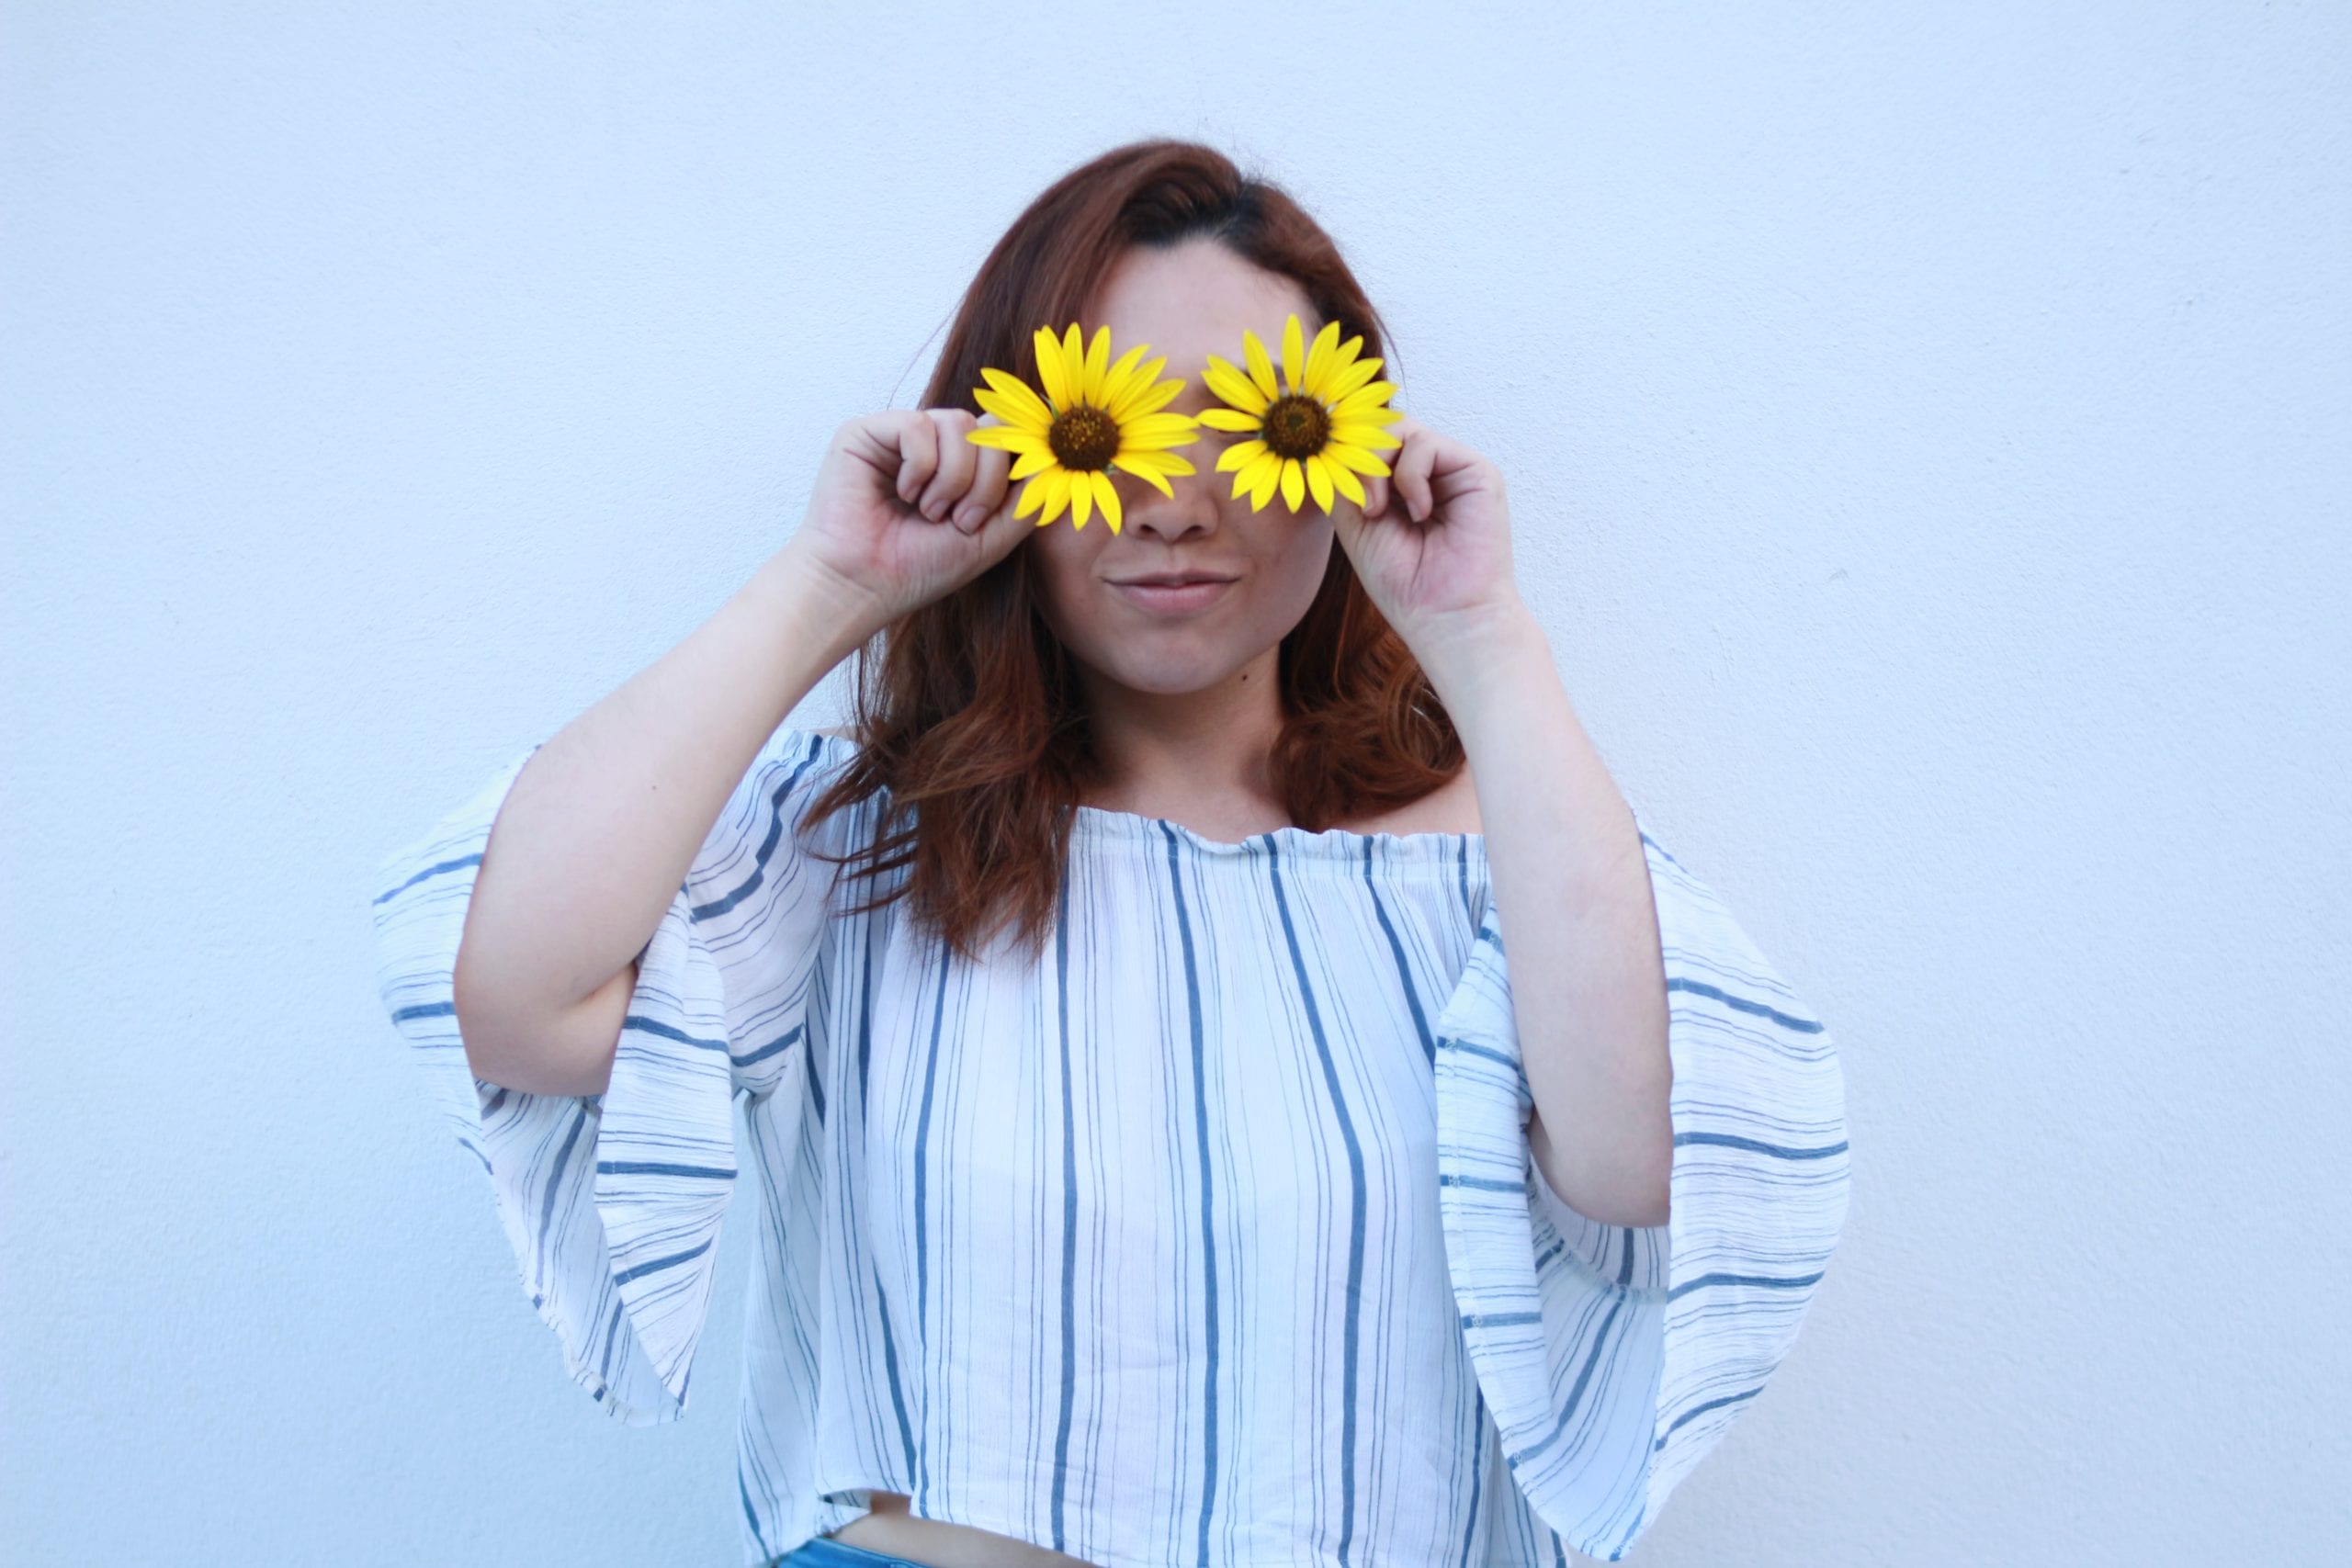 Girl holding sunflowers over her eyes